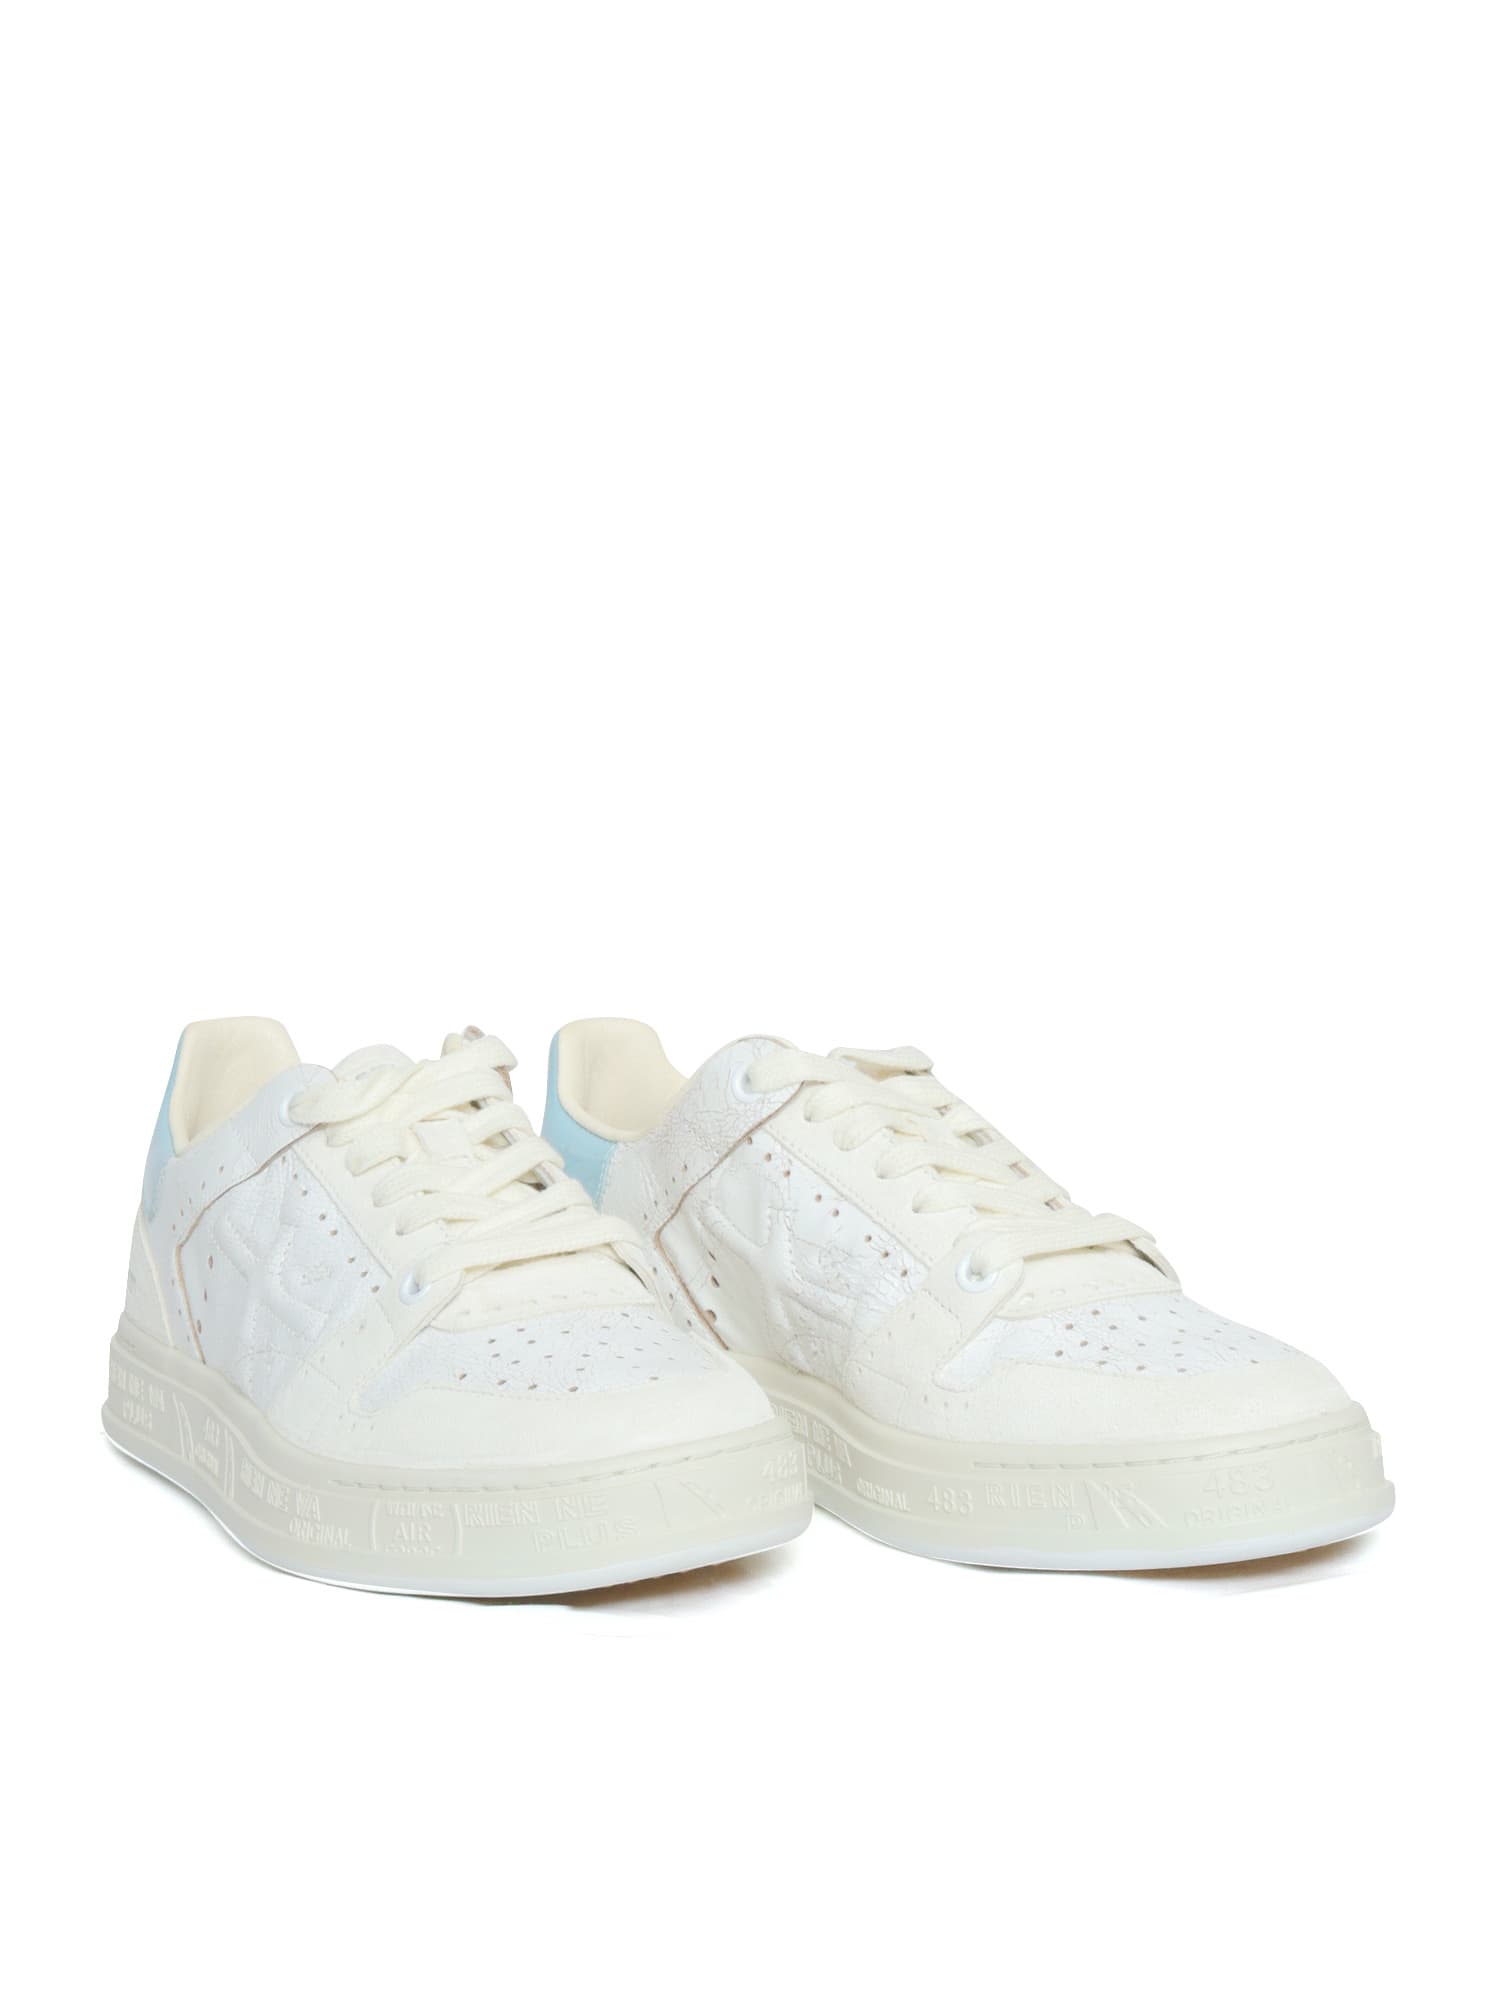 Shop Premiata White Quinnd Sneakers